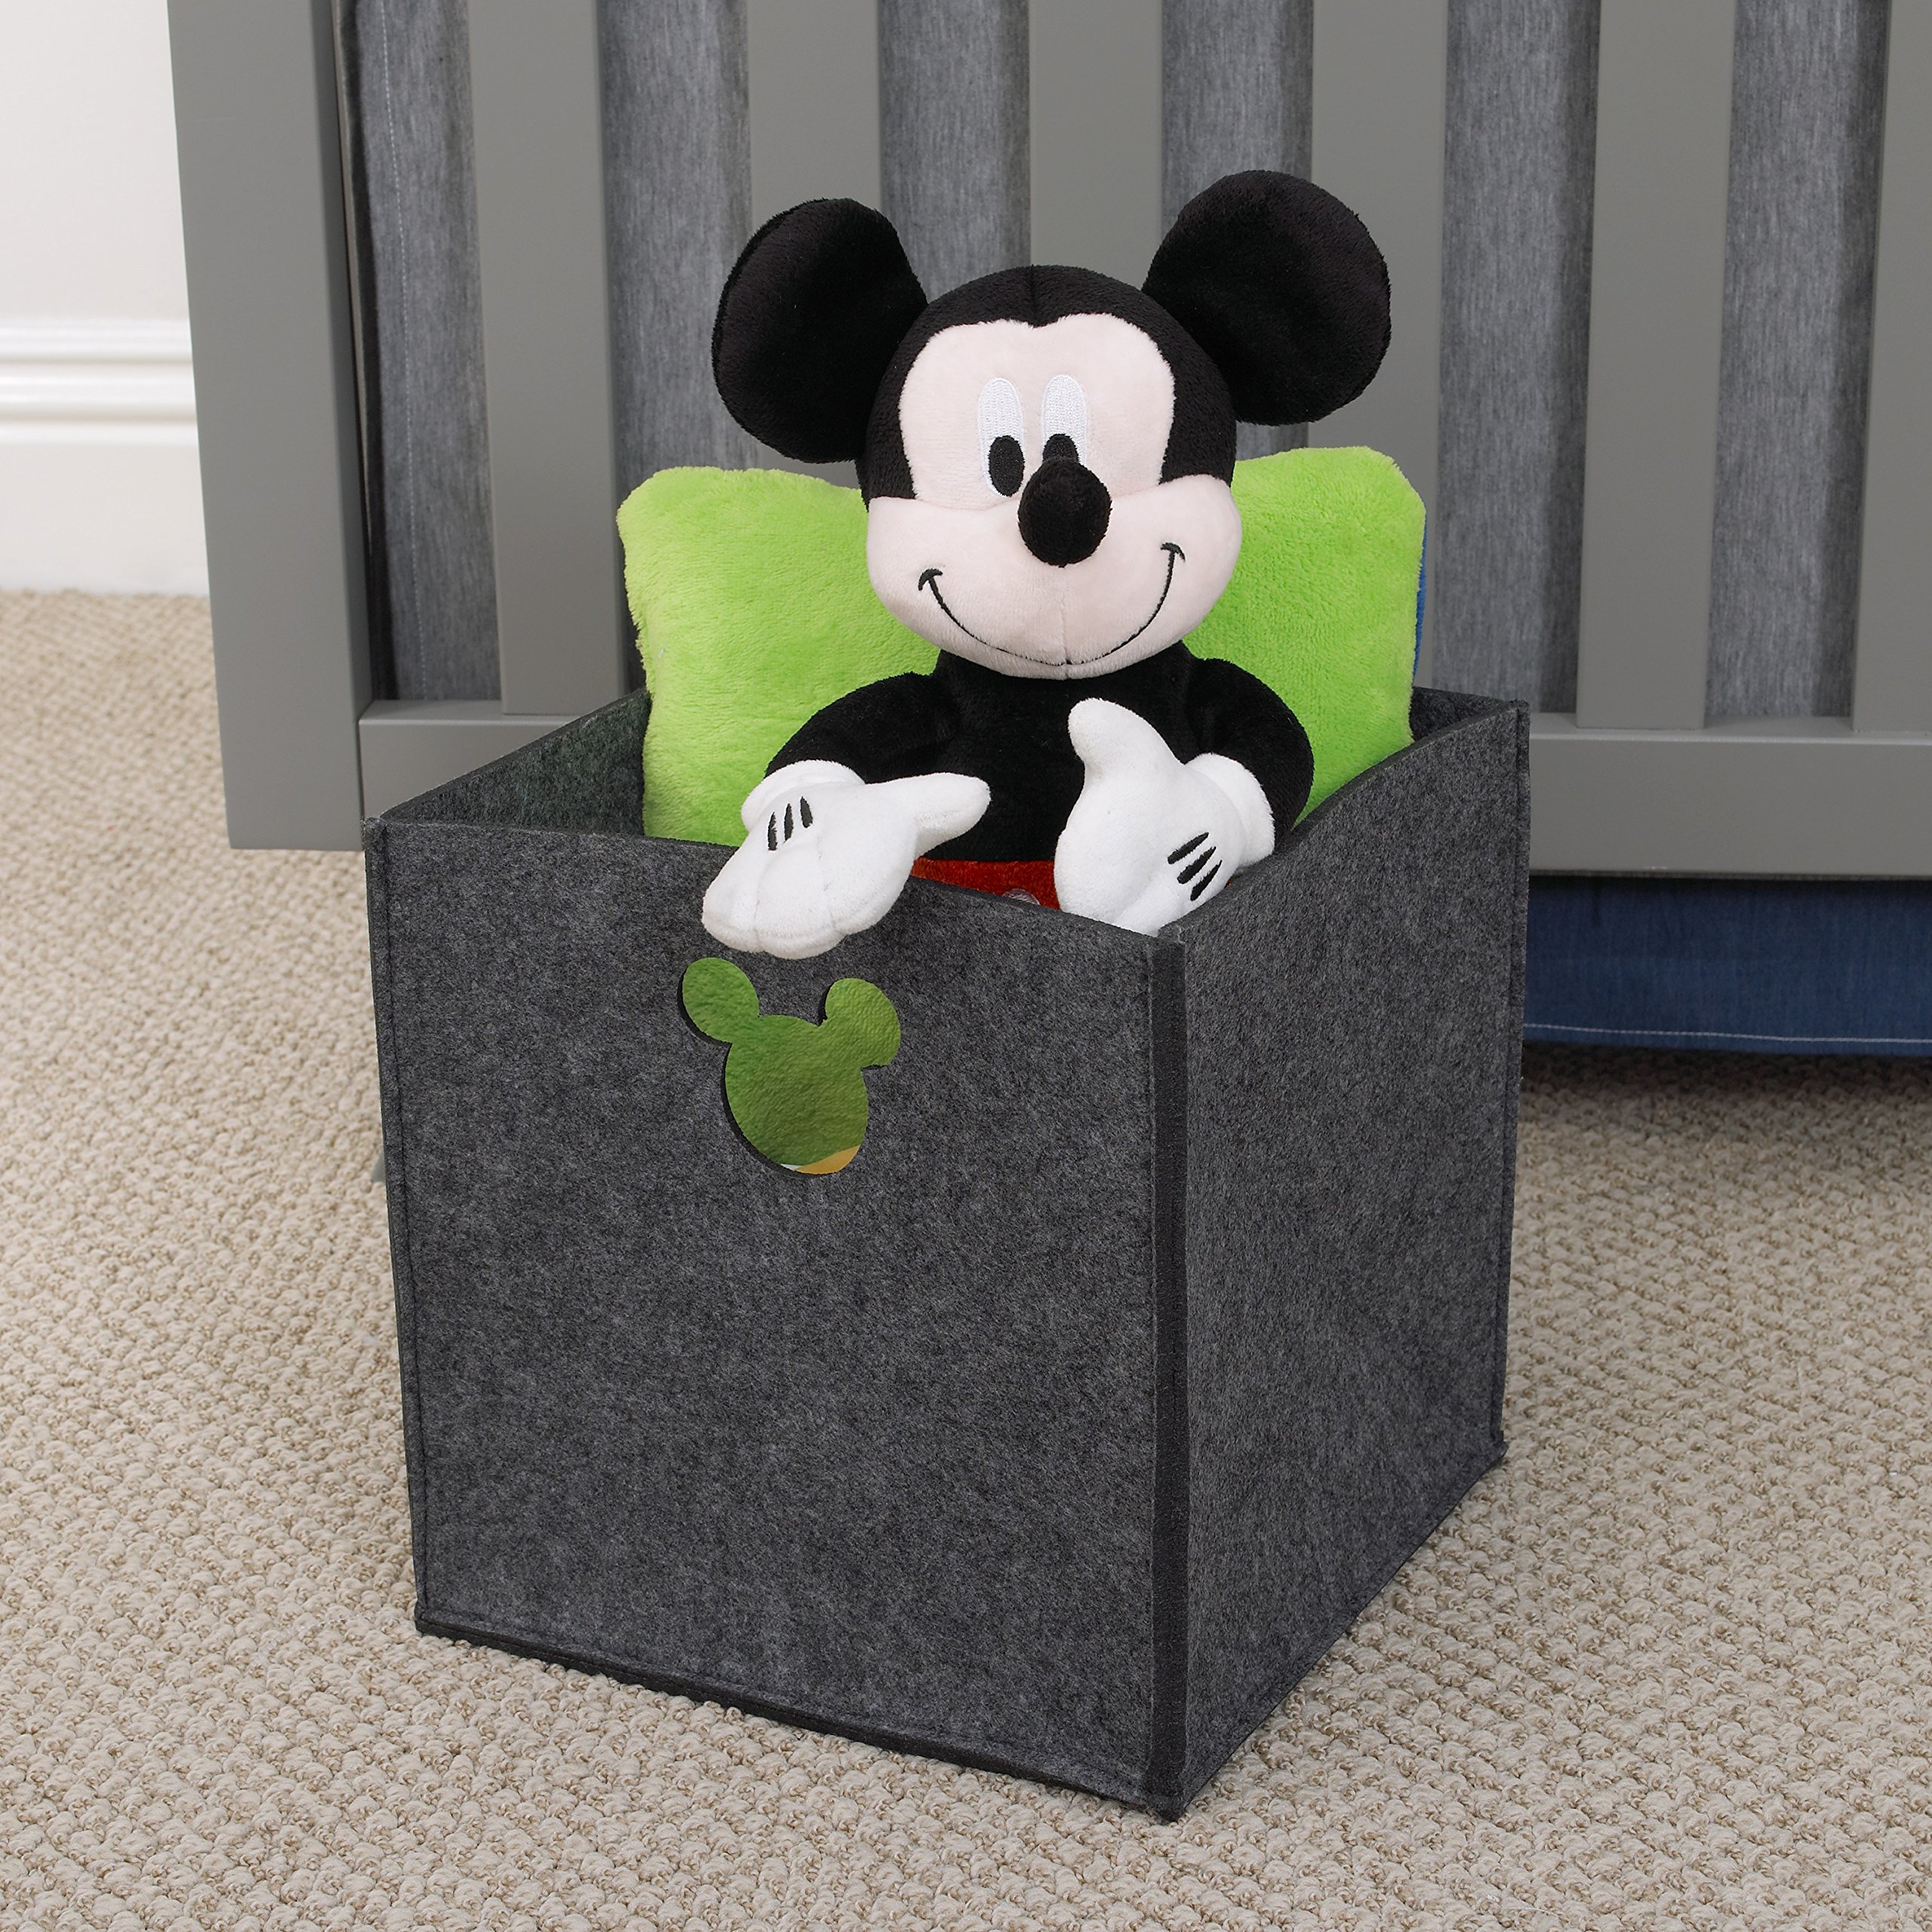 Disney Felt Die Cut Storage Bin, Grey, Mickey Mouse